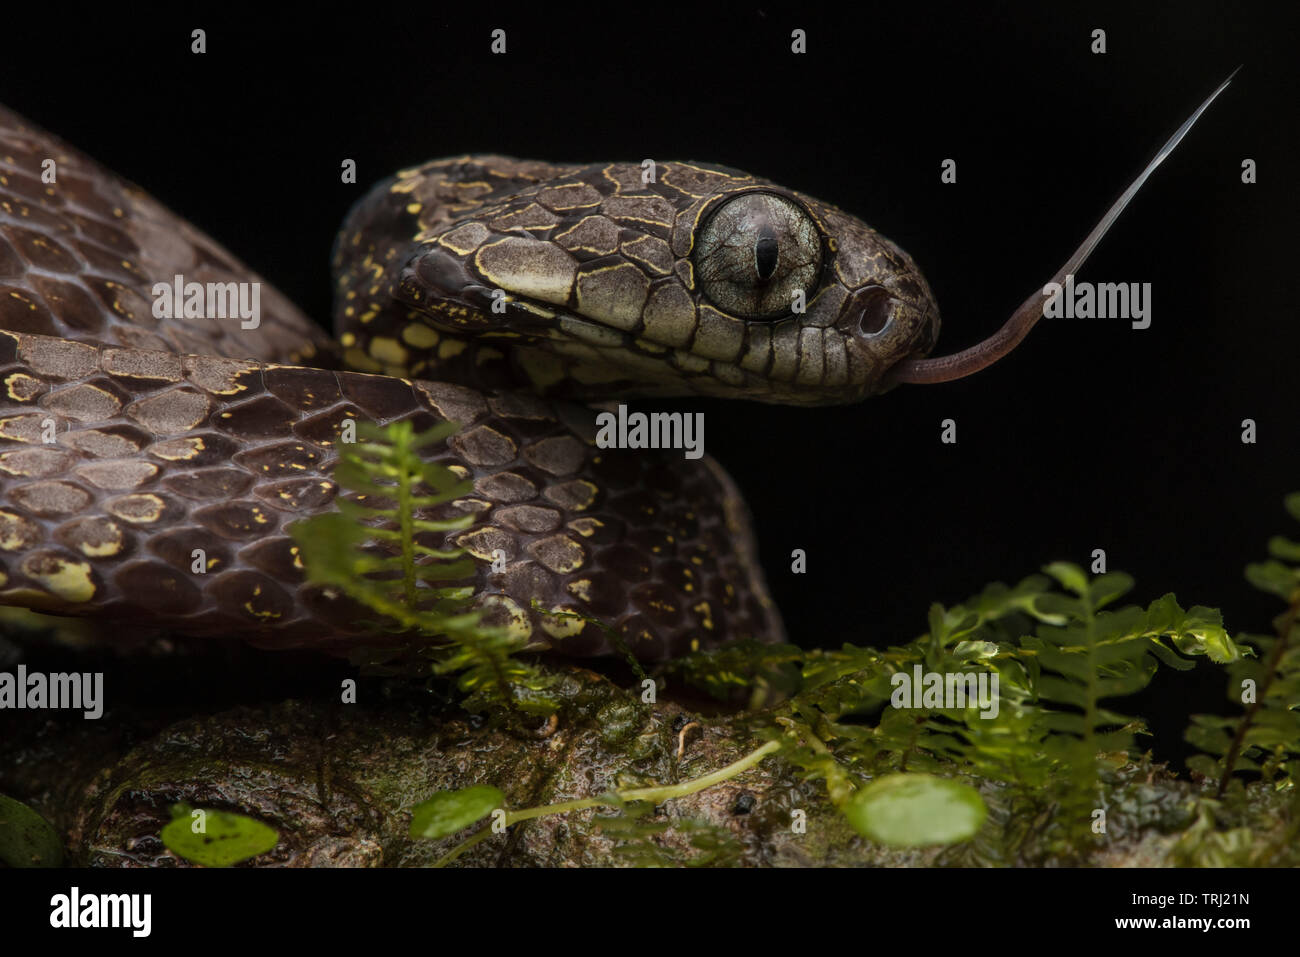 Un caracol neotropicales eater (Dipsas indica) del Parque Nacional Yasuní, estas serpientes alimentarse exclusivamente de caracoles y babosas. Foto de stock